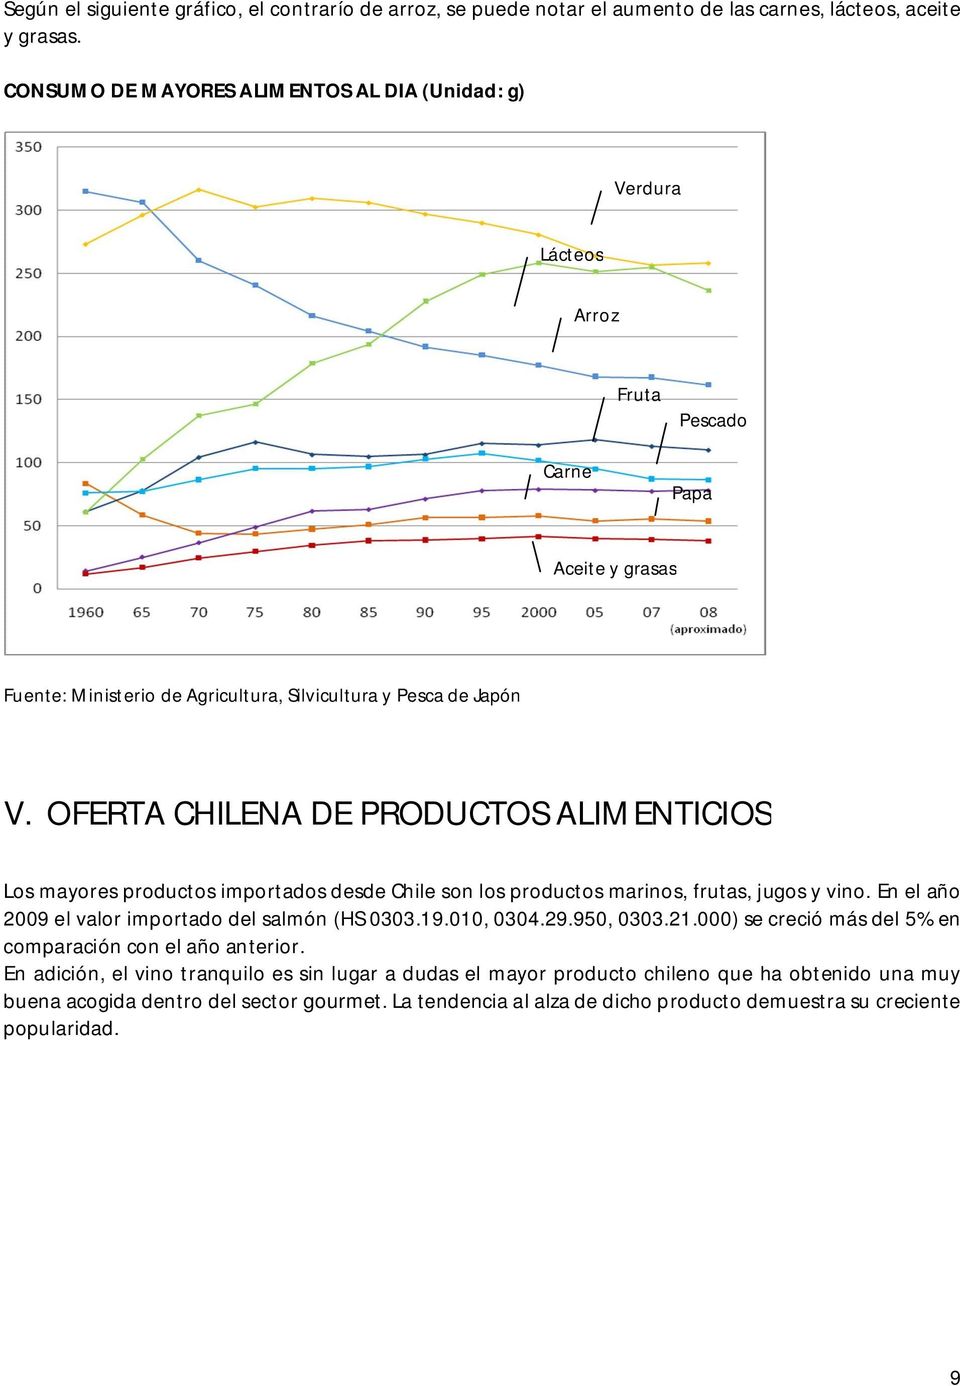 OFERTA CHILENA DE PRODUCTOS ALIMENTICIOS Los mayores productos importados desde Chile son los productos marinos, frutas, jugos y vino. En el año 2009 el valor importado del salmón (HS 0303.19.